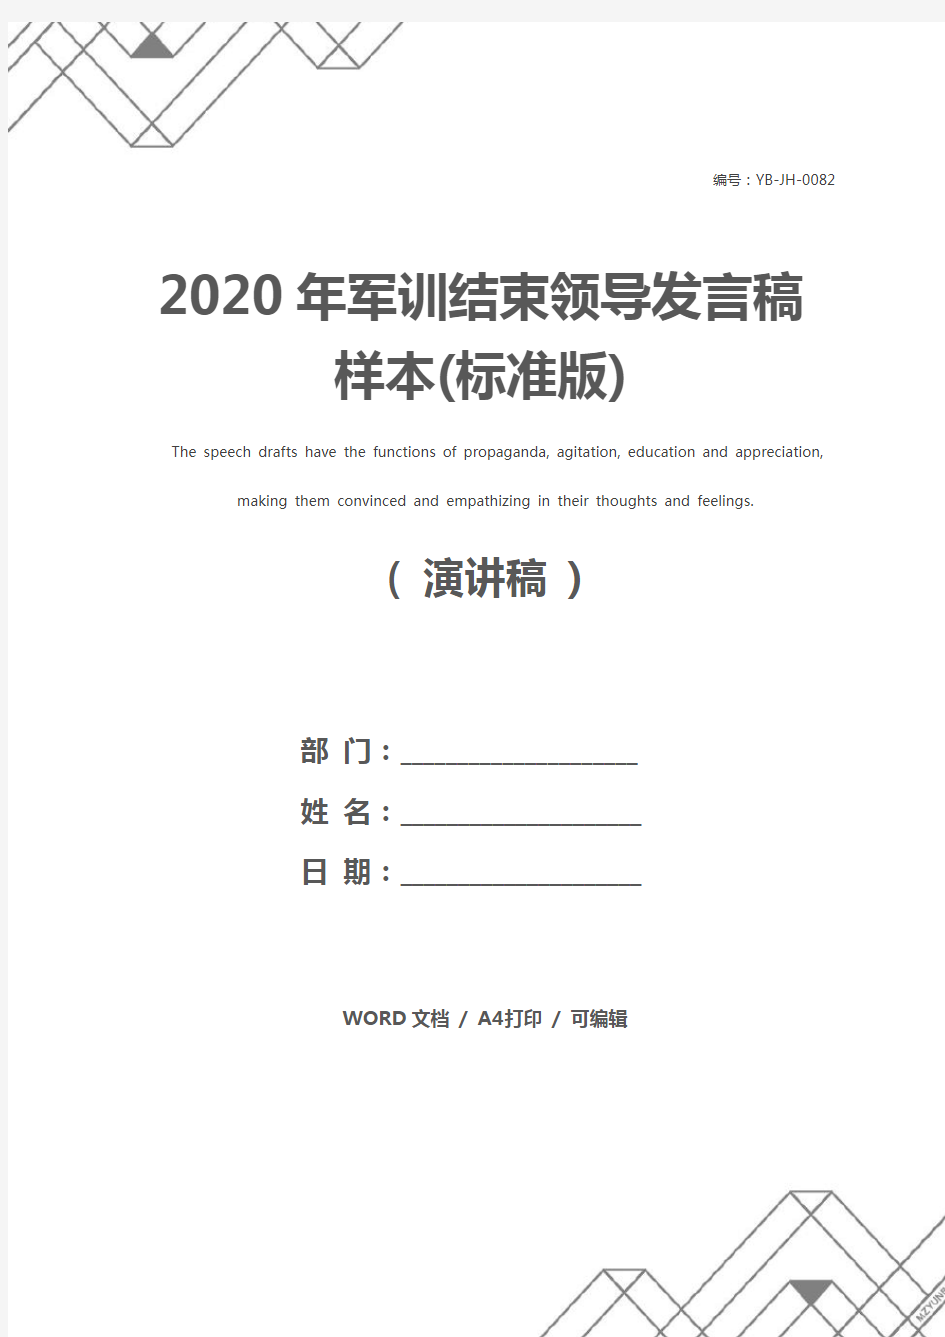 2020年军训结束领导发言稿样本(标准版)